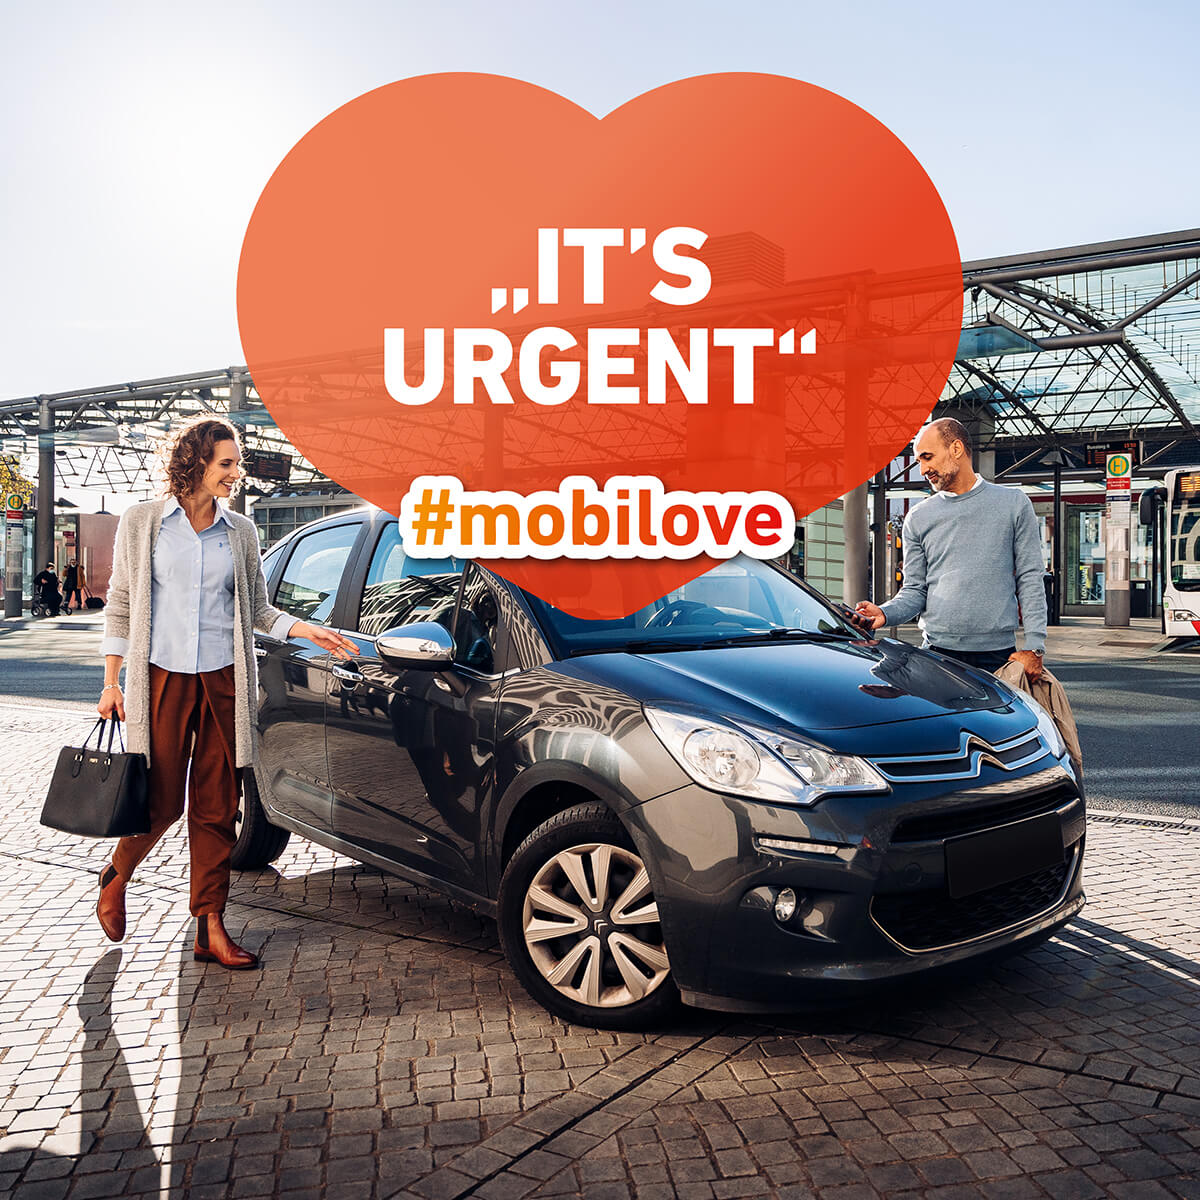 Mobilove-Visual: Mann und Frau steigen aus einem schwarzen Auto aus. In der Herzchen-Kommentarblase steht "It's urgent"